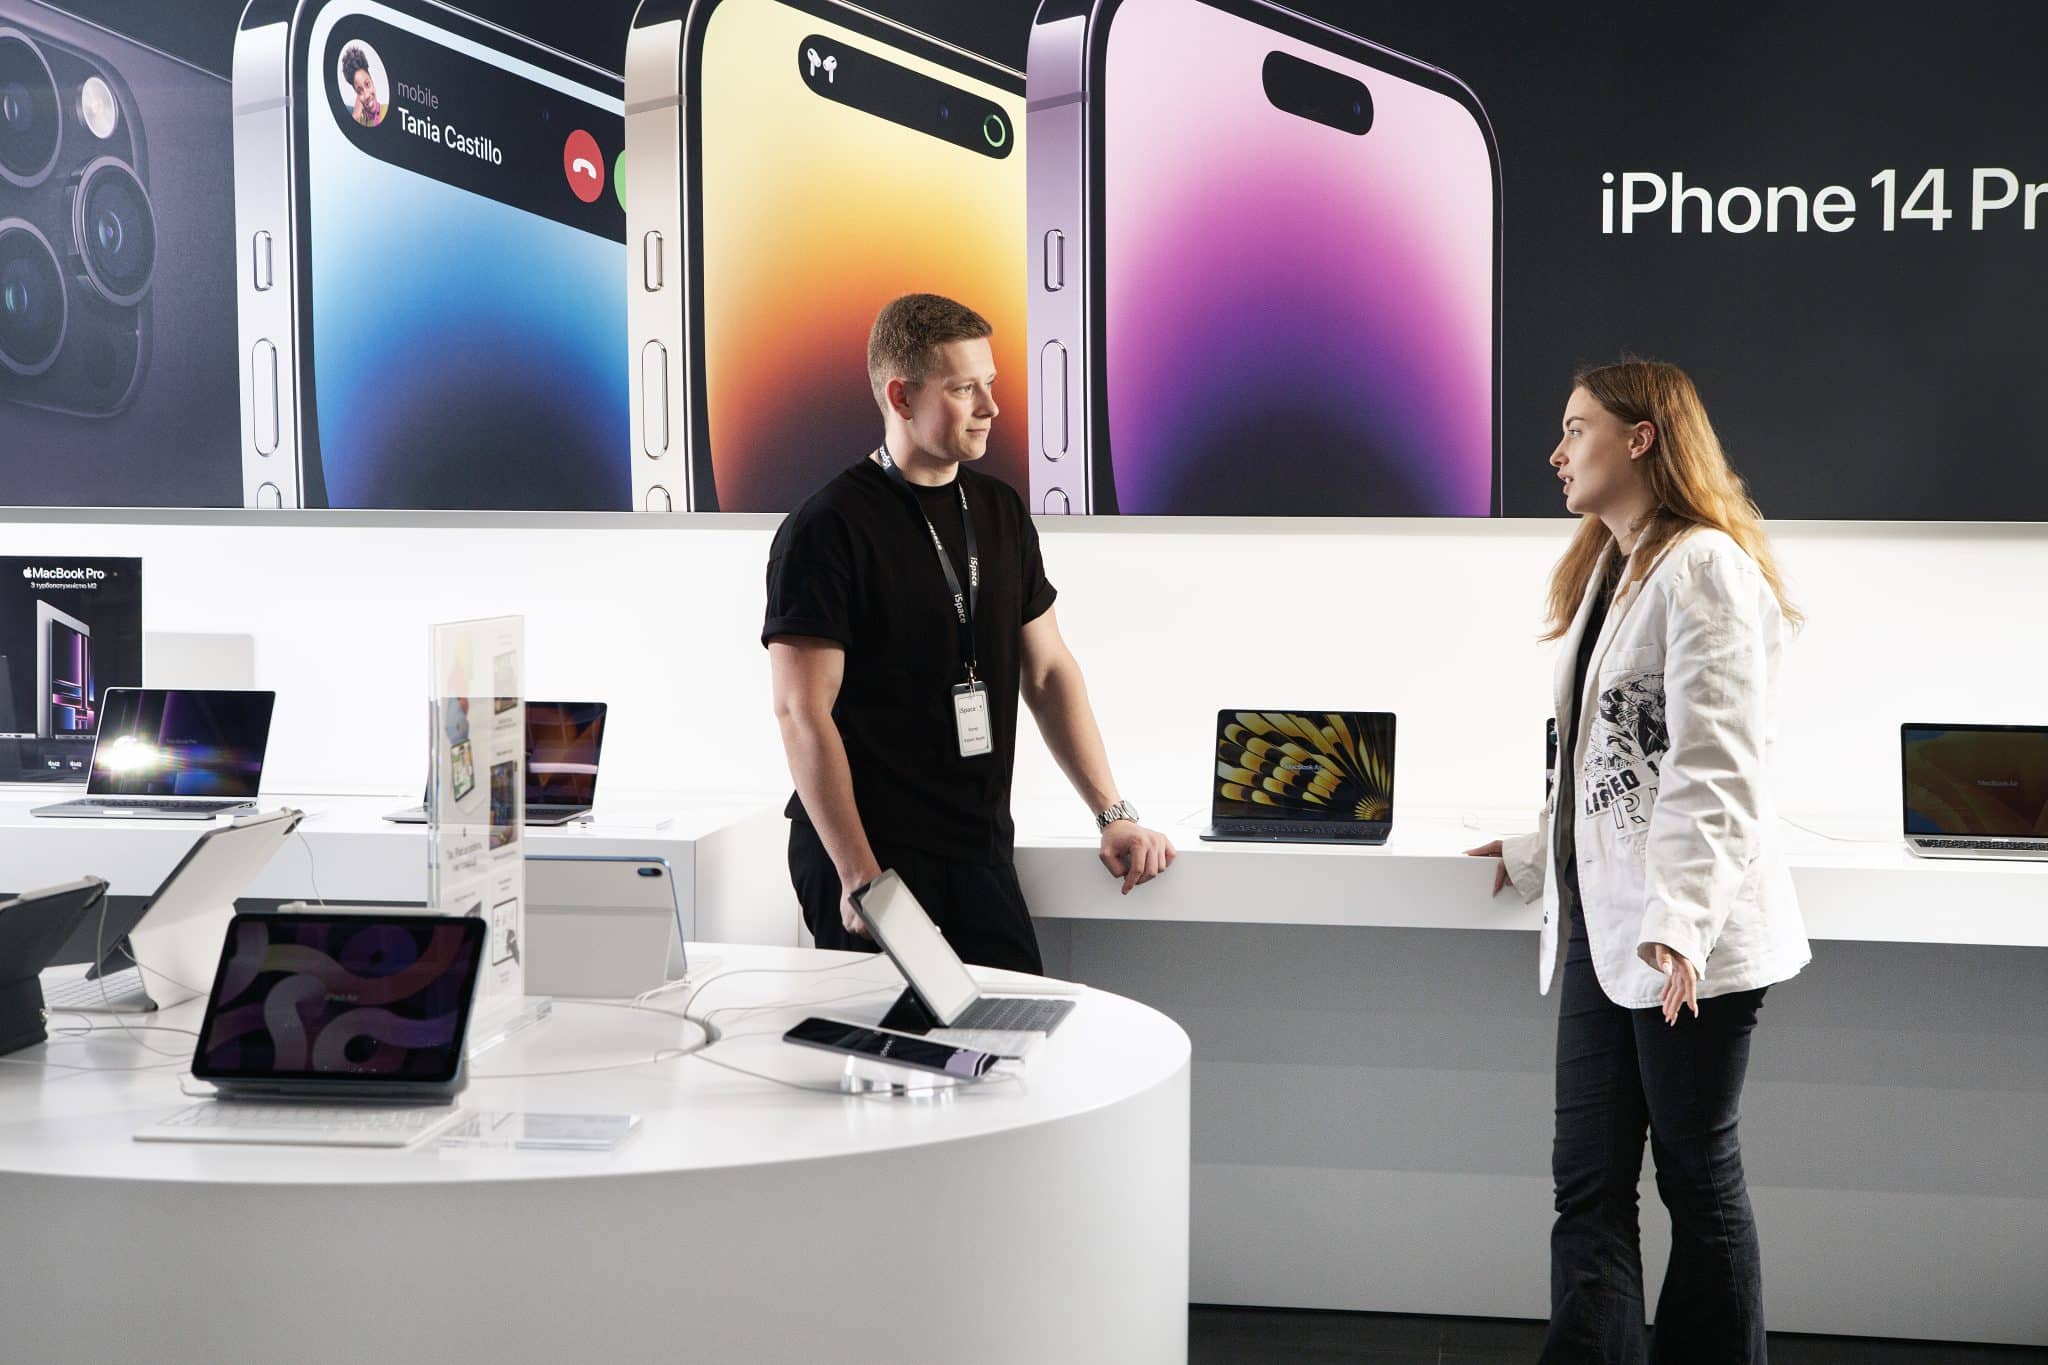 Сеть iOn меняет название на iSpace и предлагает выгодные цены на устройства Apple